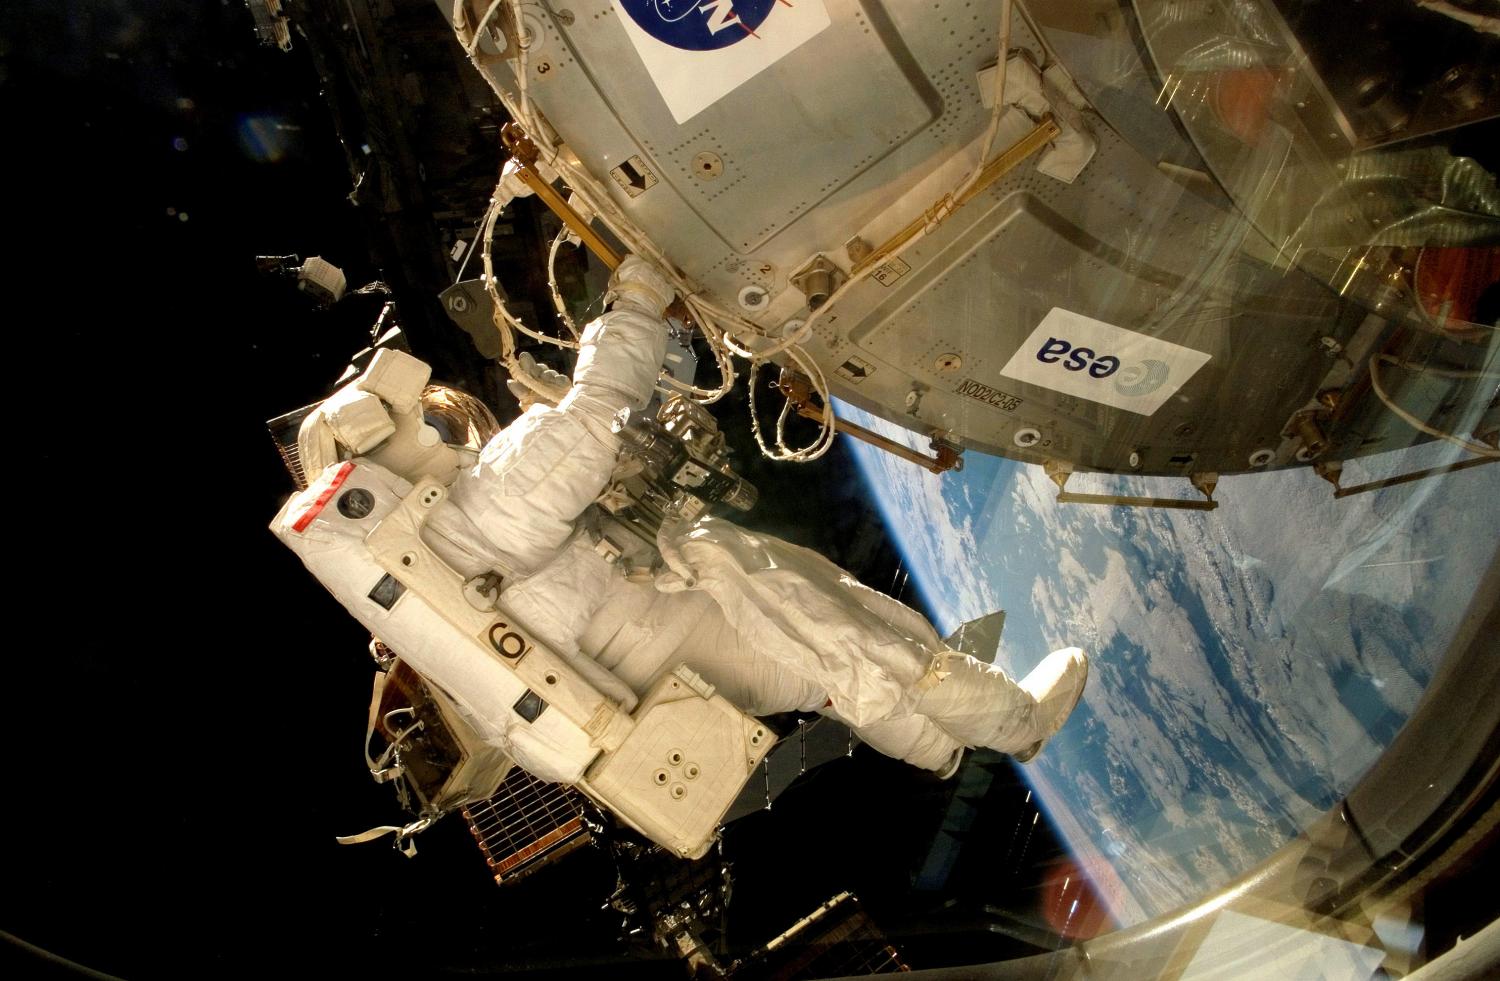 L'environnement martien a été simulé dans la plateforme expérimentale Expose-E de la Station spatiale internationale. Celle-ci fut acheminée jusqu’à l'ISS à bord de la navette Atlantis en 2008 et installée à l’extérieur du module Columbus par l’astronaute belge Frank de Winne. © Esa